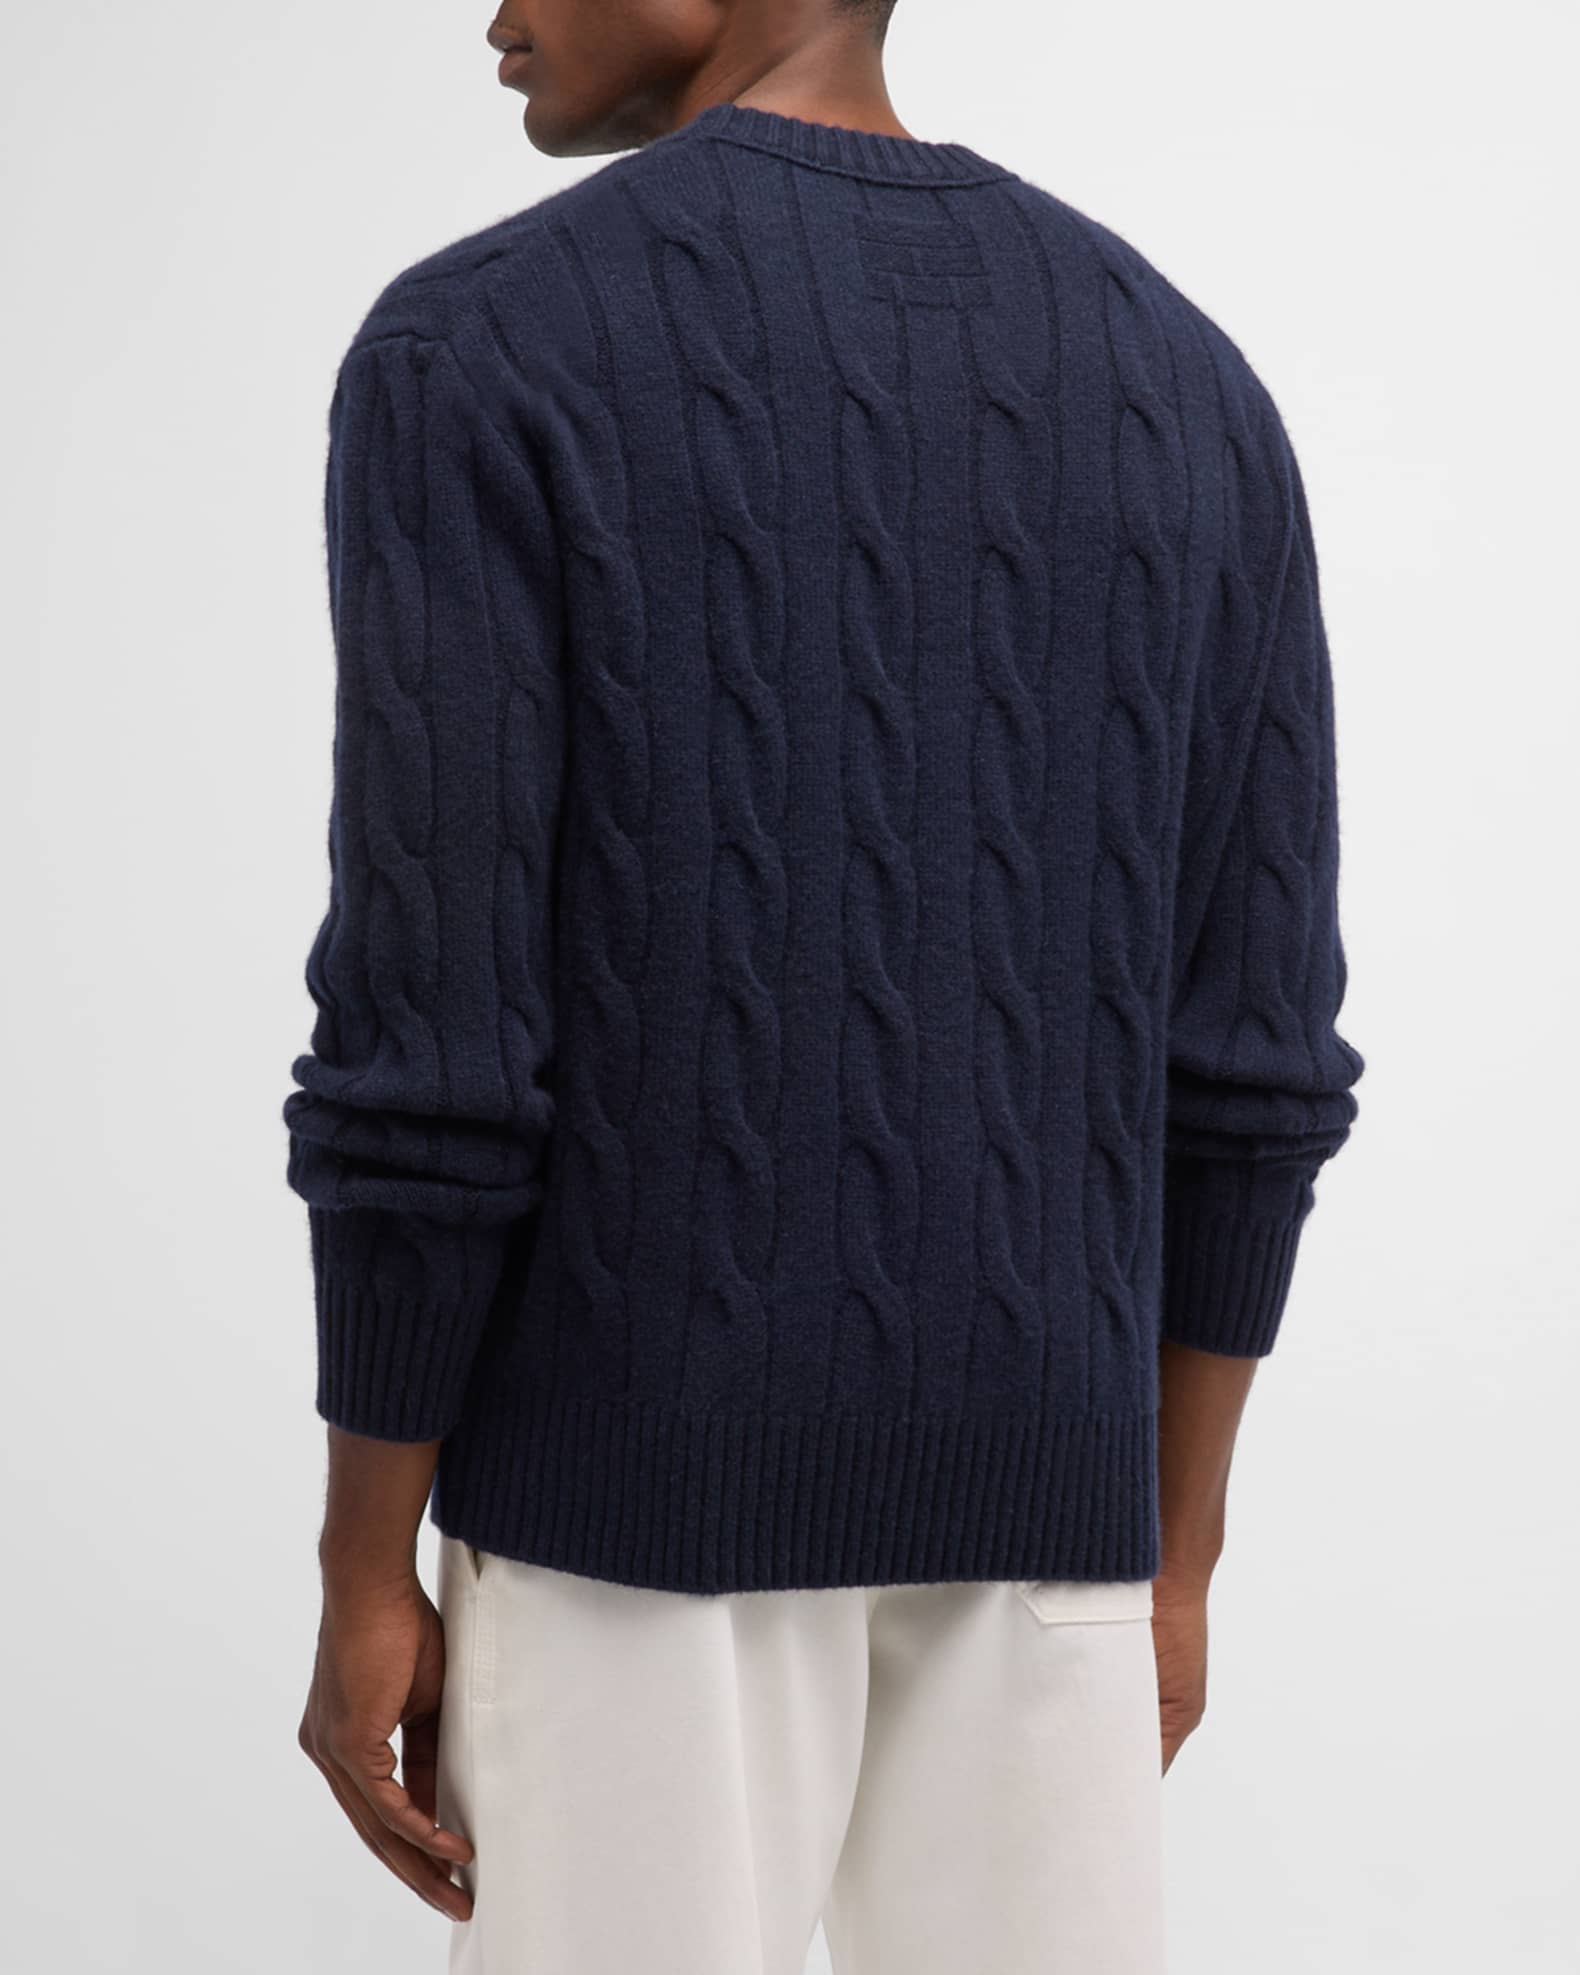 Men's Barbour Crest Pullover Cable Knit Sweater Size L V Neck Blue Red  Vintage